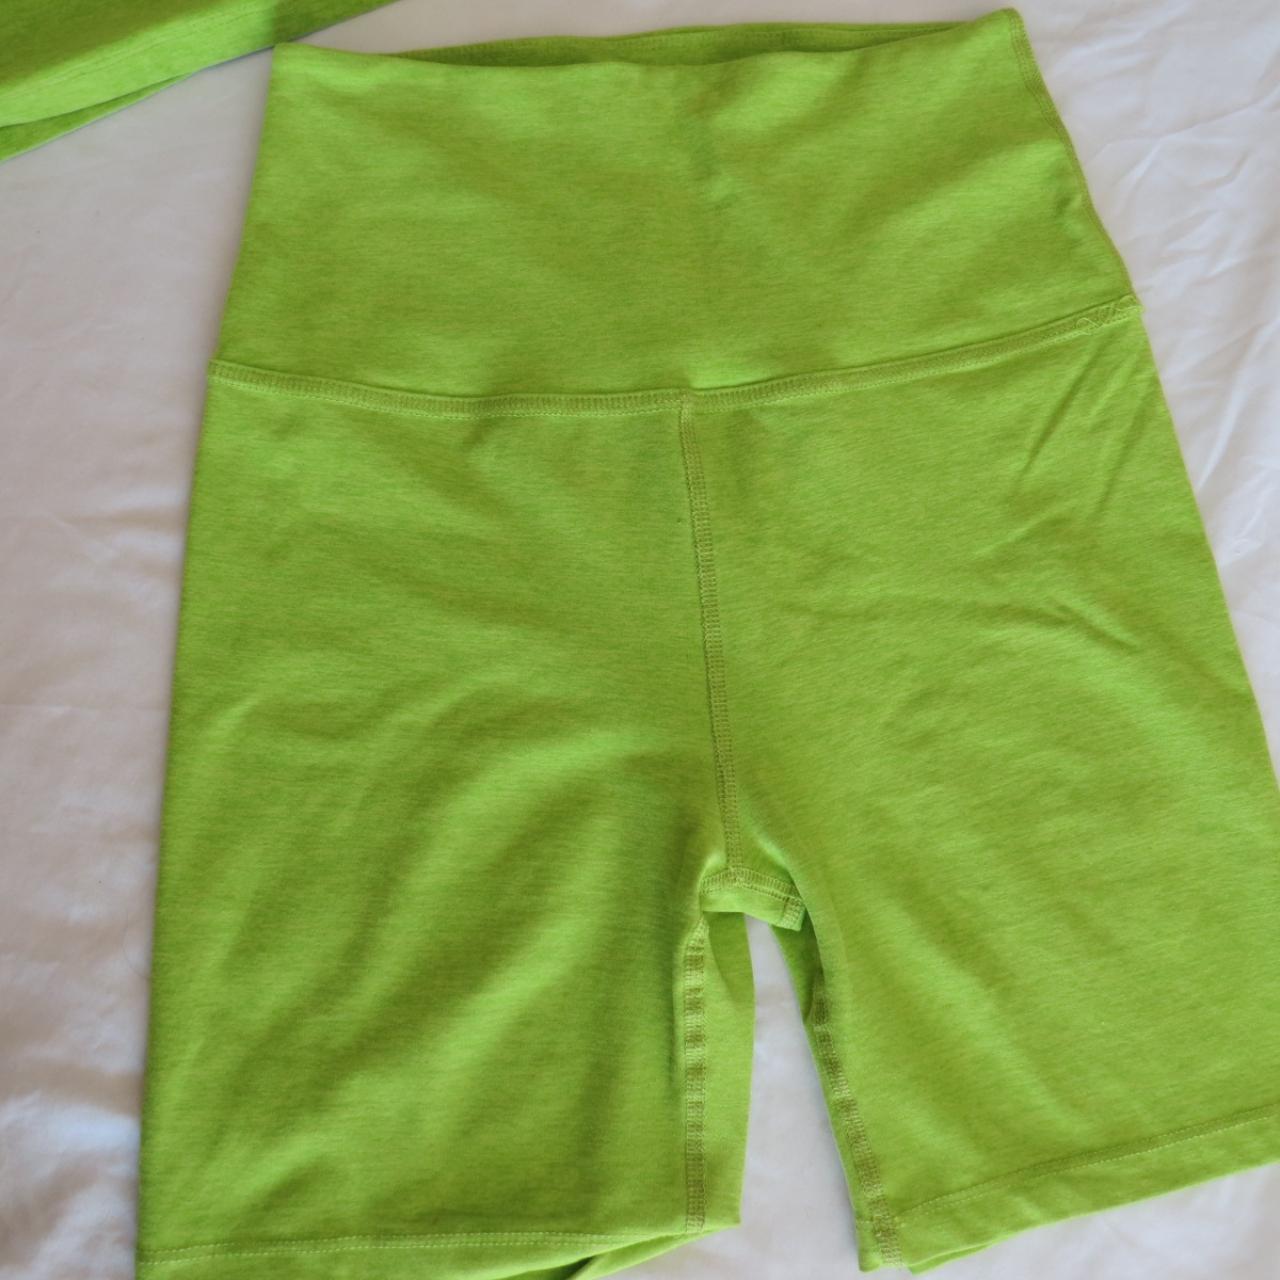 Beyond Yoga Biker Shorts Lime Green Spacedye High - Depop